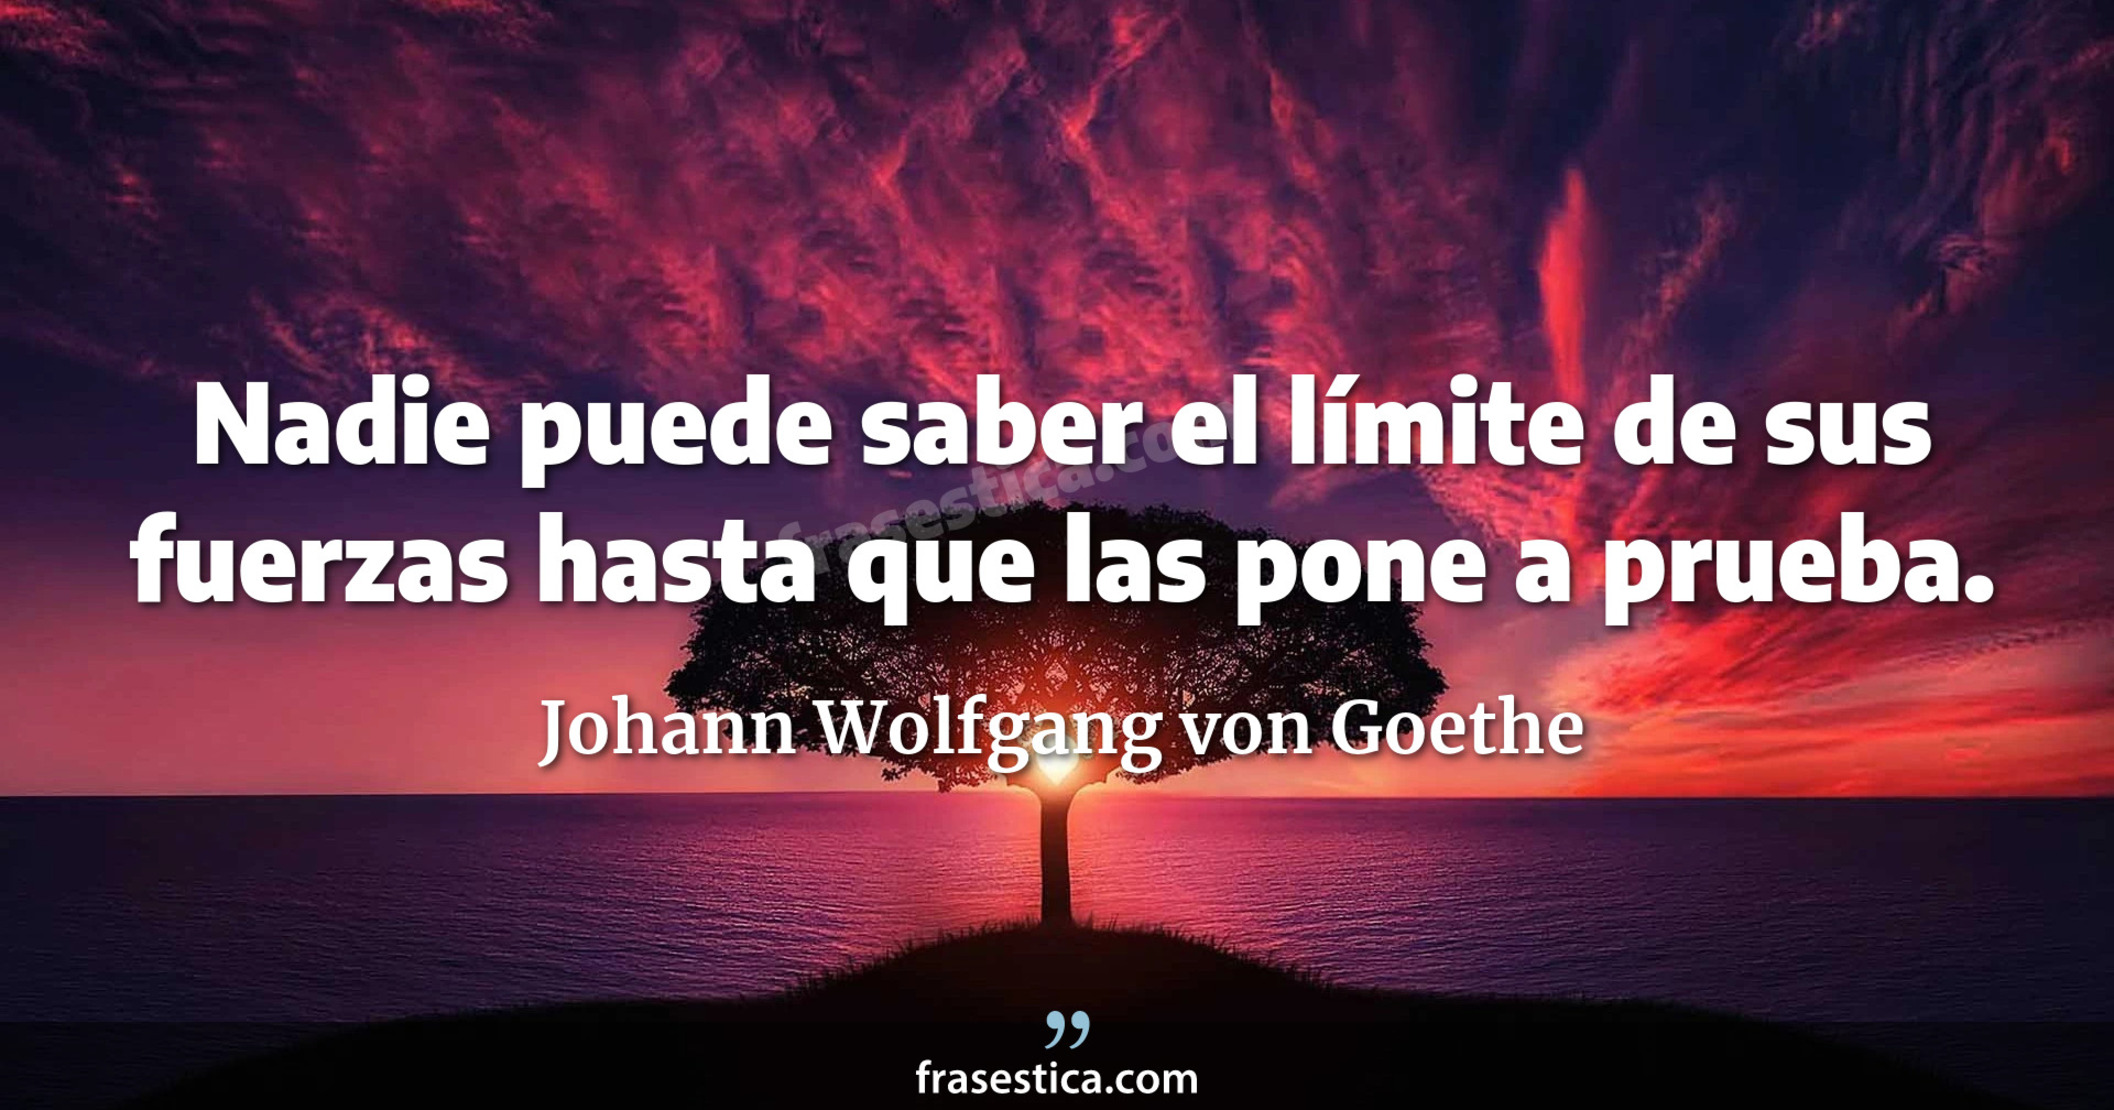 Nadie puede saber el límite de sus fuerzas hasta que las pone a prueba. - Johann Wolfgang von Goethe